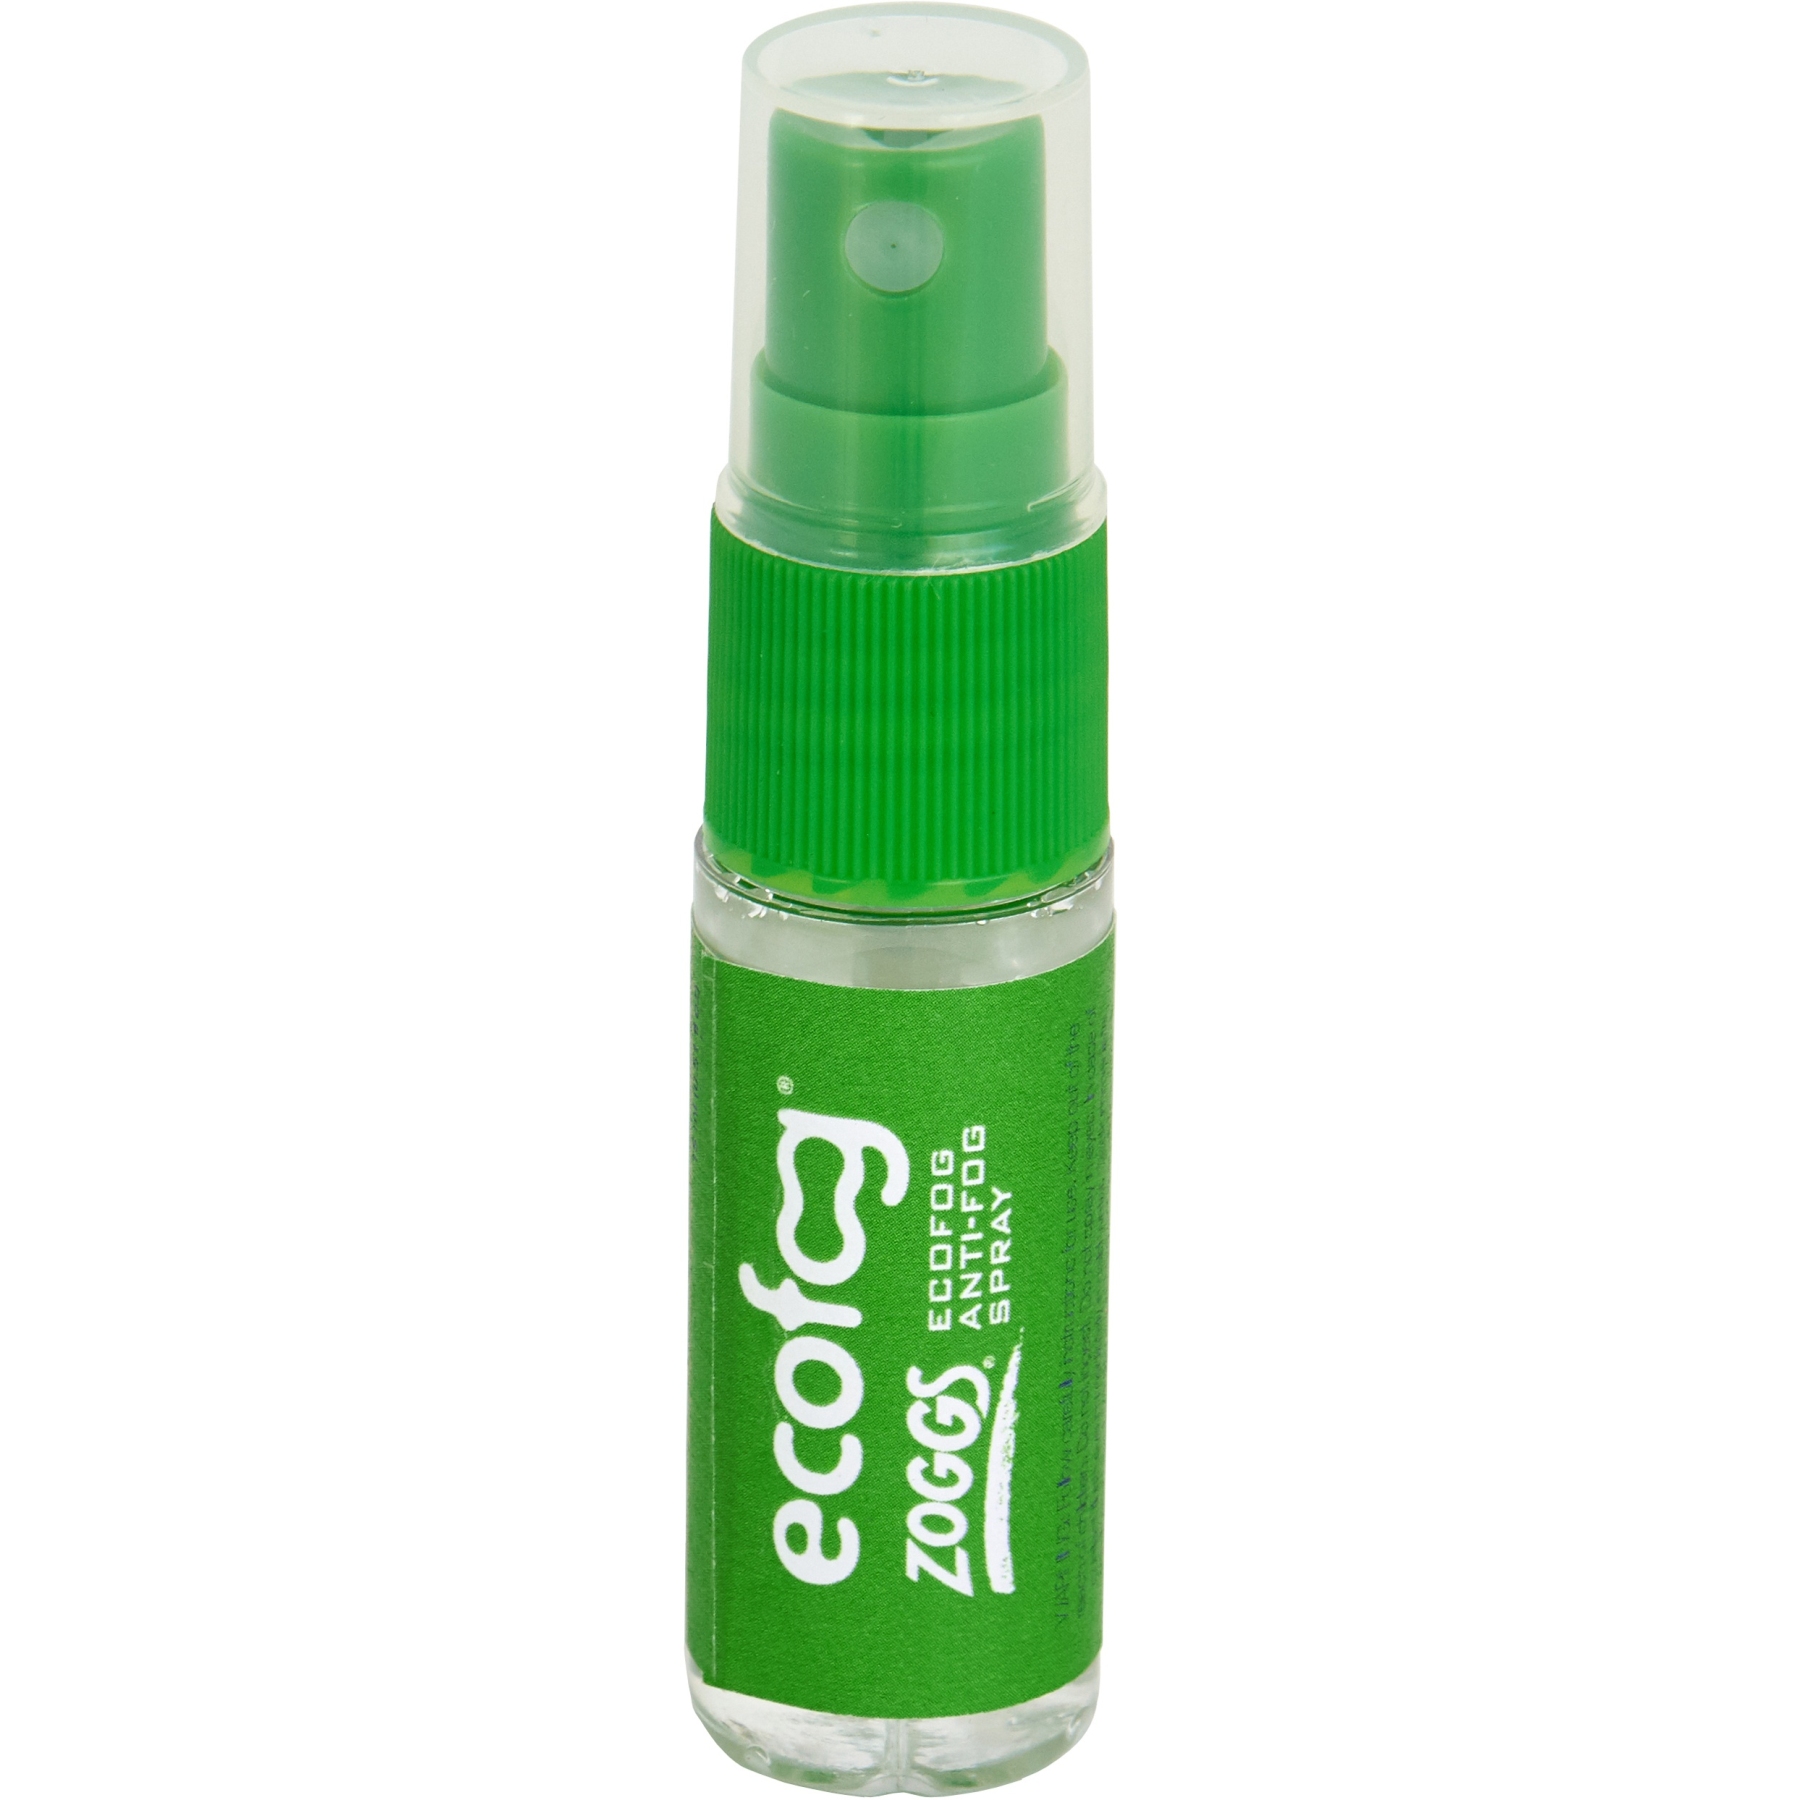 Produktbild von Zoggs ECOFOG Anti-Beschlag-Spray 15ml